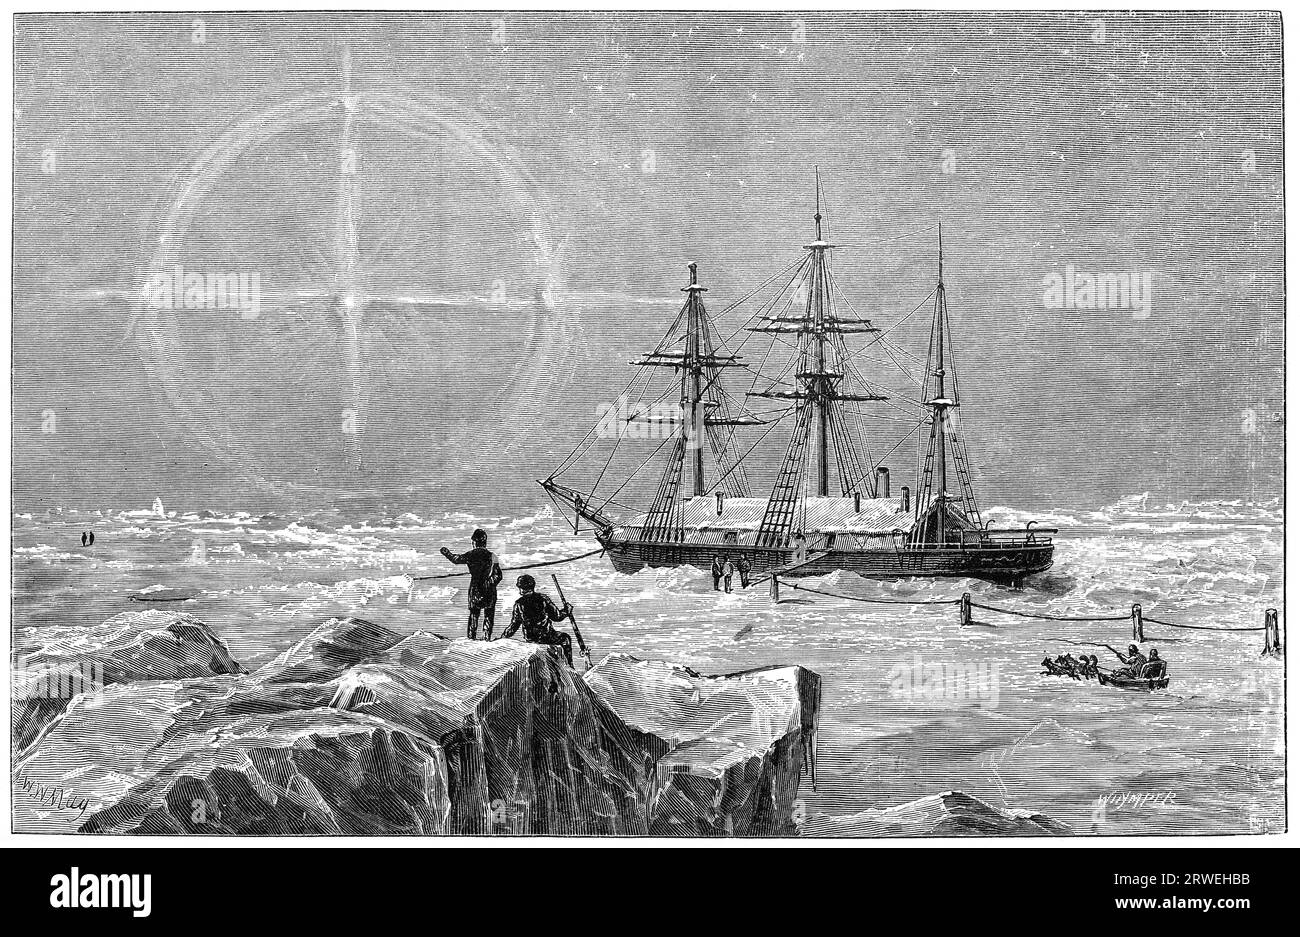 Vega dans les quartiers d'hiver. Nordenskioelds participe à trois expéditions géologiques au Spitzberg, suivies de longues explorations de l'Arctique en 1867 Banque D'Images